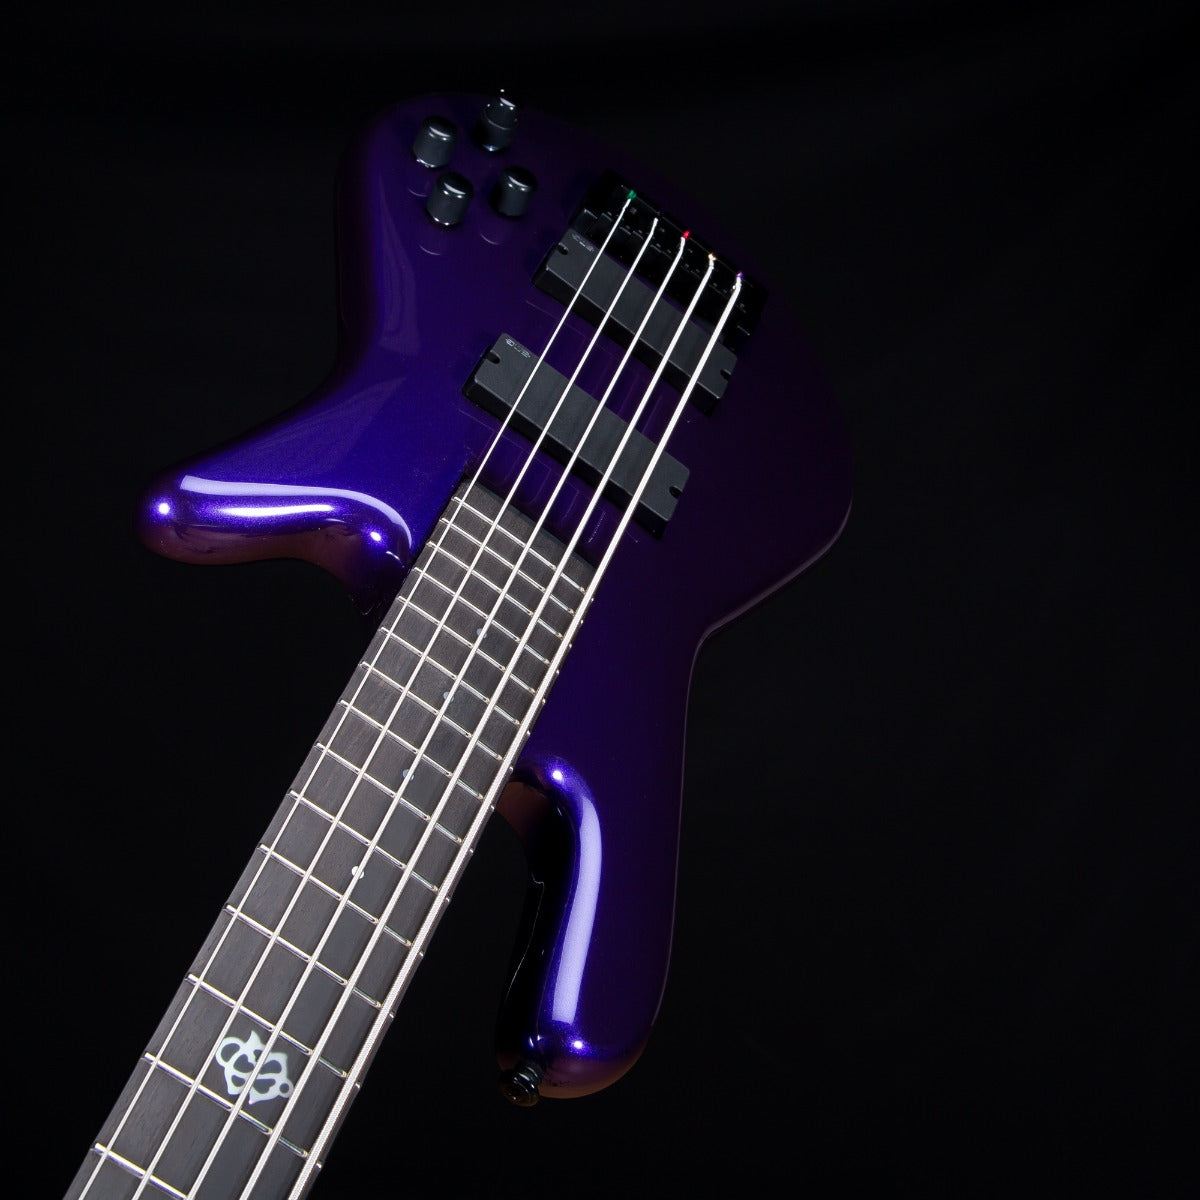 Spector NS Ethos HP 5 Bass Guitar - Plum Crazy Gloss view 6